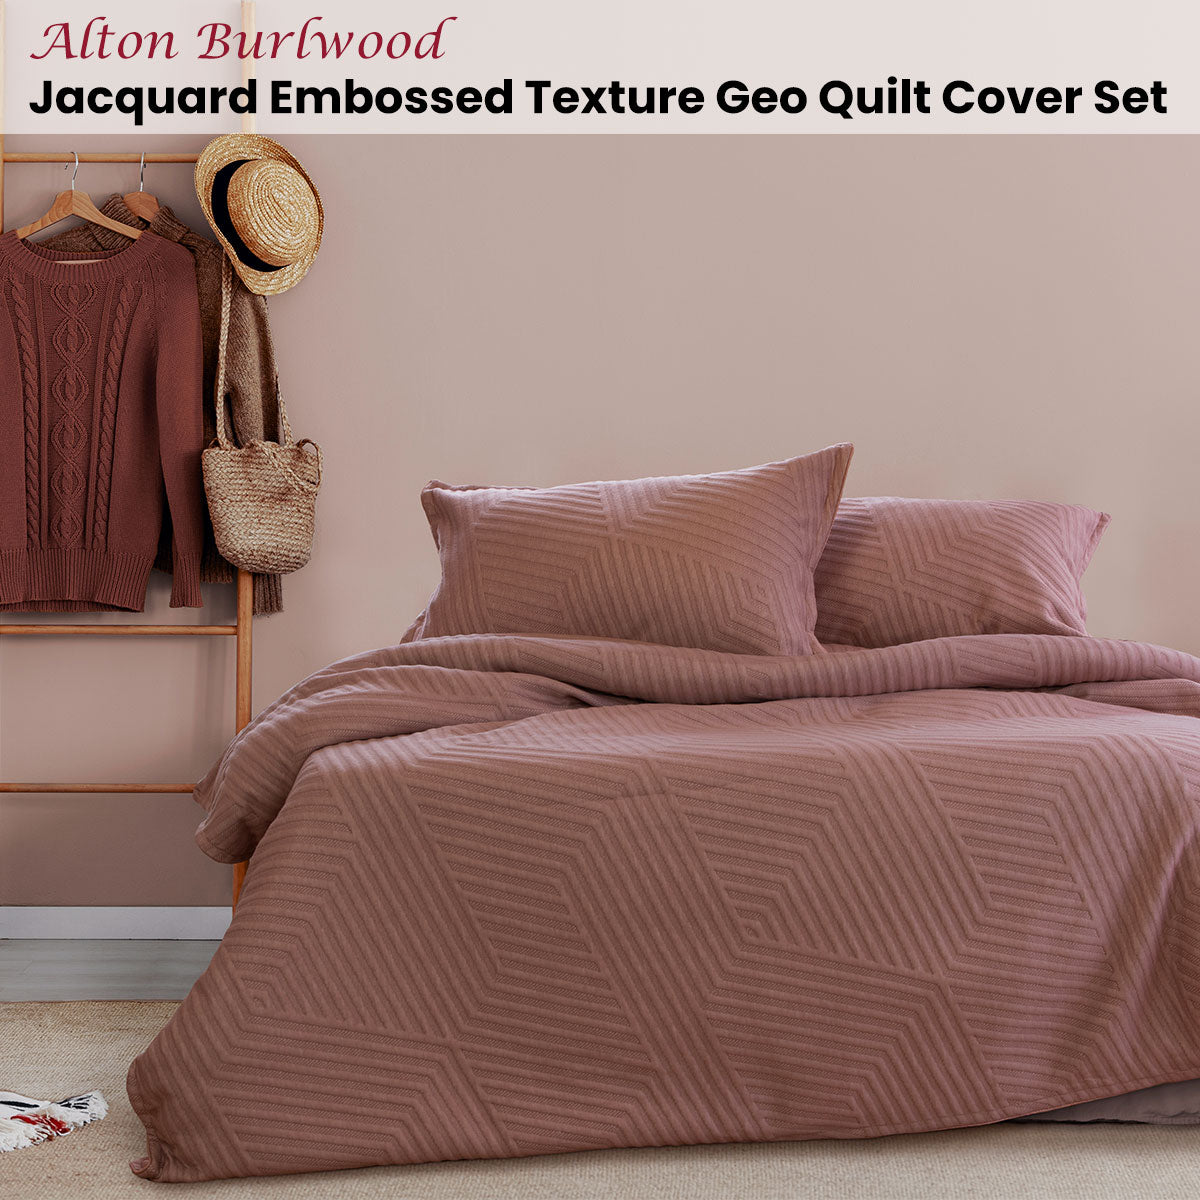 Ardor Alton Burlwood Jacquard Embossed Texture Geo Queen Size Quilt Cover Set